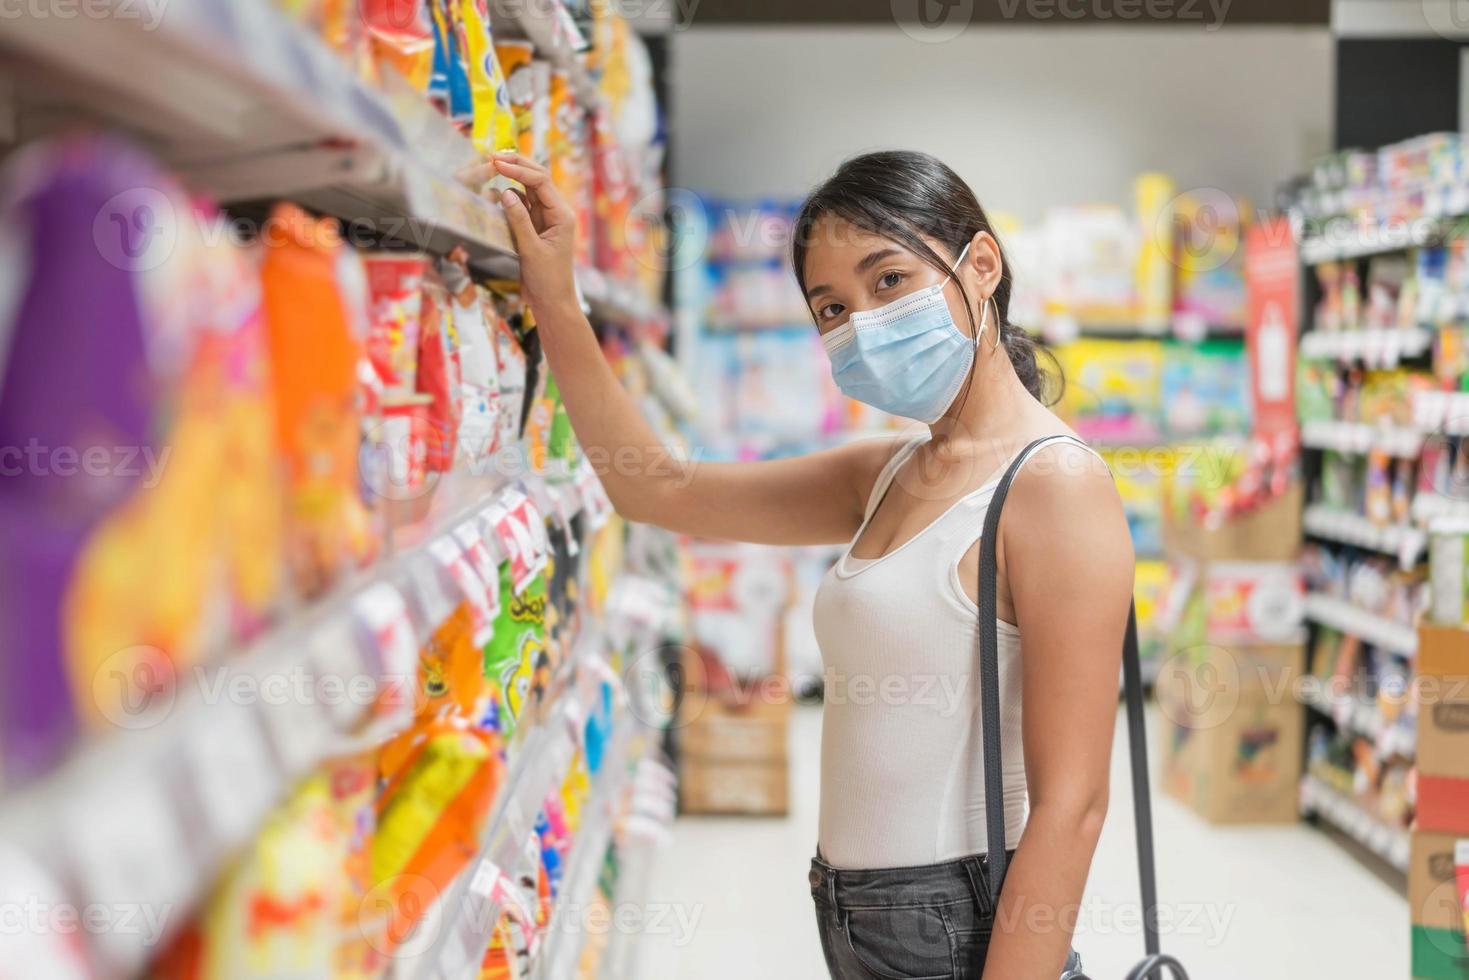 asiatische Frau mit Gesichtsmaske beim Einkaufen im Supermarkt. sicherheits- und coronavirus-pandemiekonzept. neuer normaler lebensstil. foto